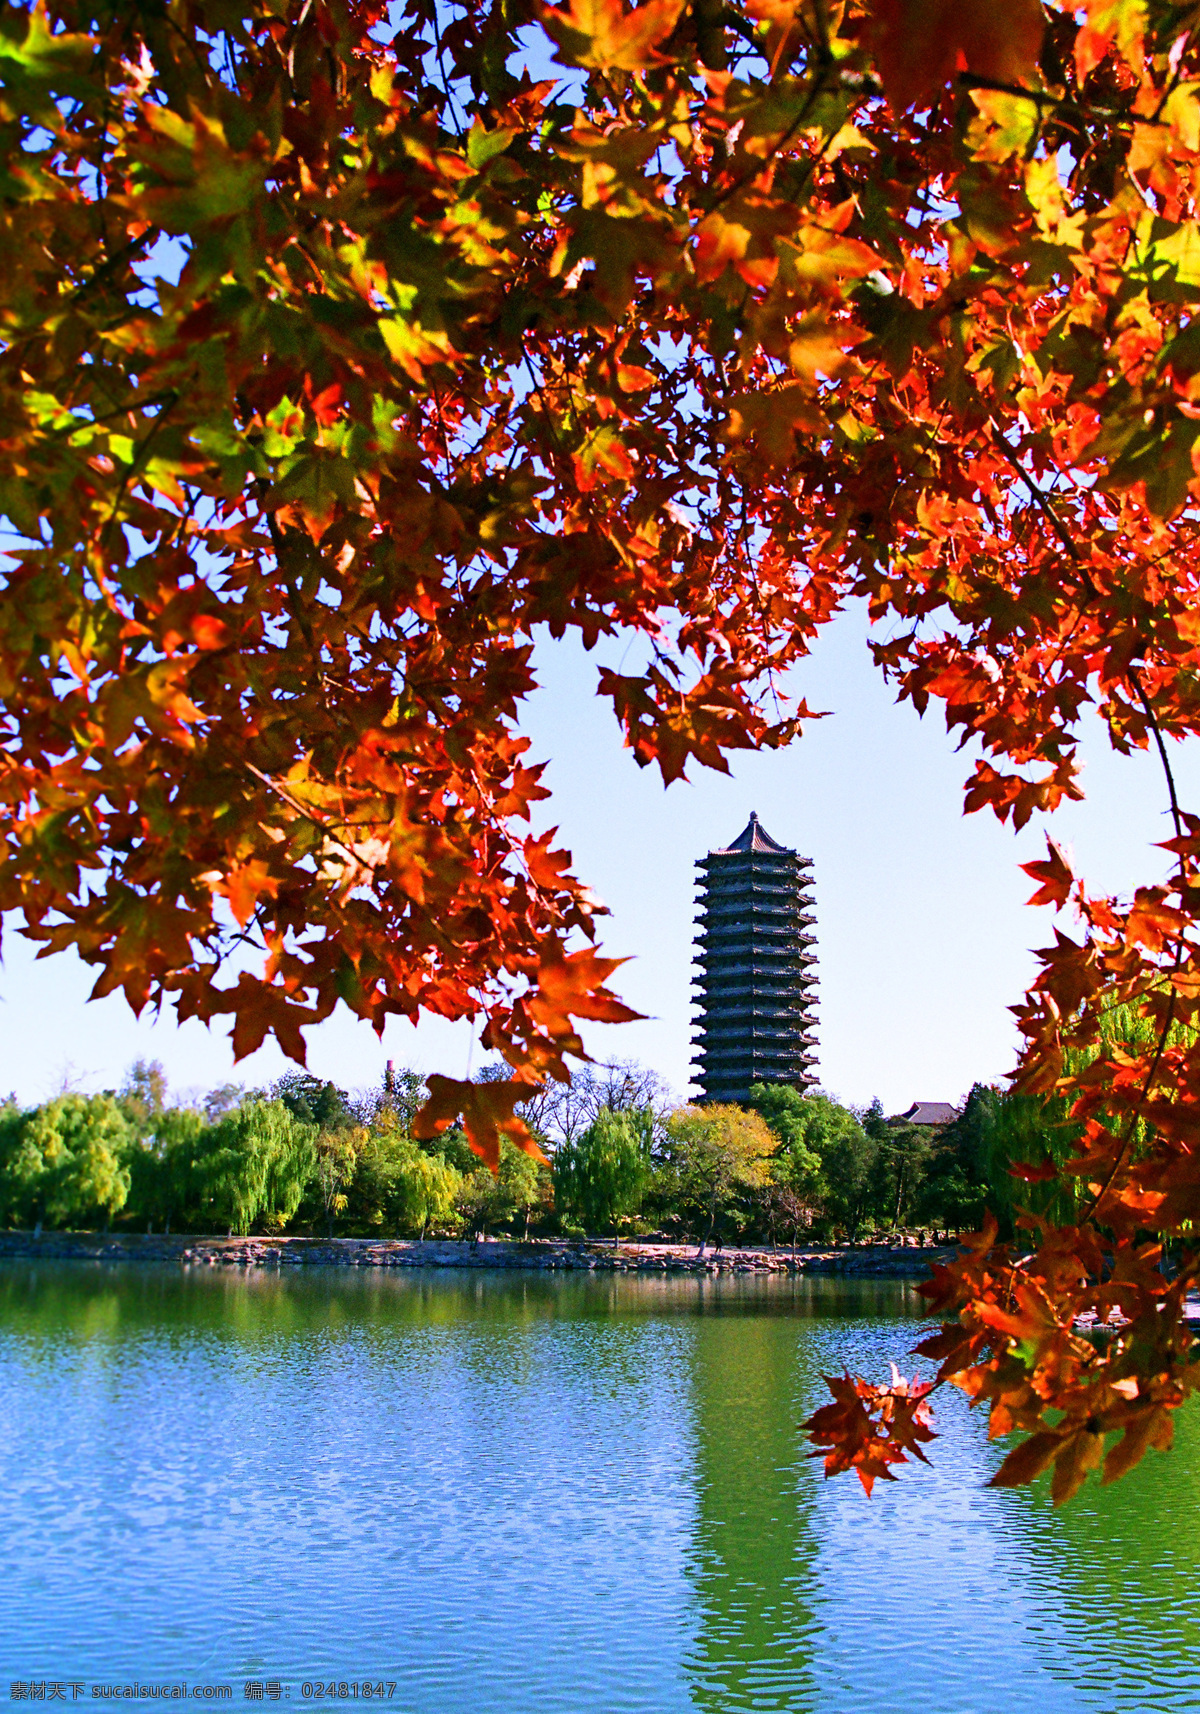 唯美 风景 风光 旅行 人文 北京 北京大学 北大 百年名校 高等学府 旅游摄影 国内旅游